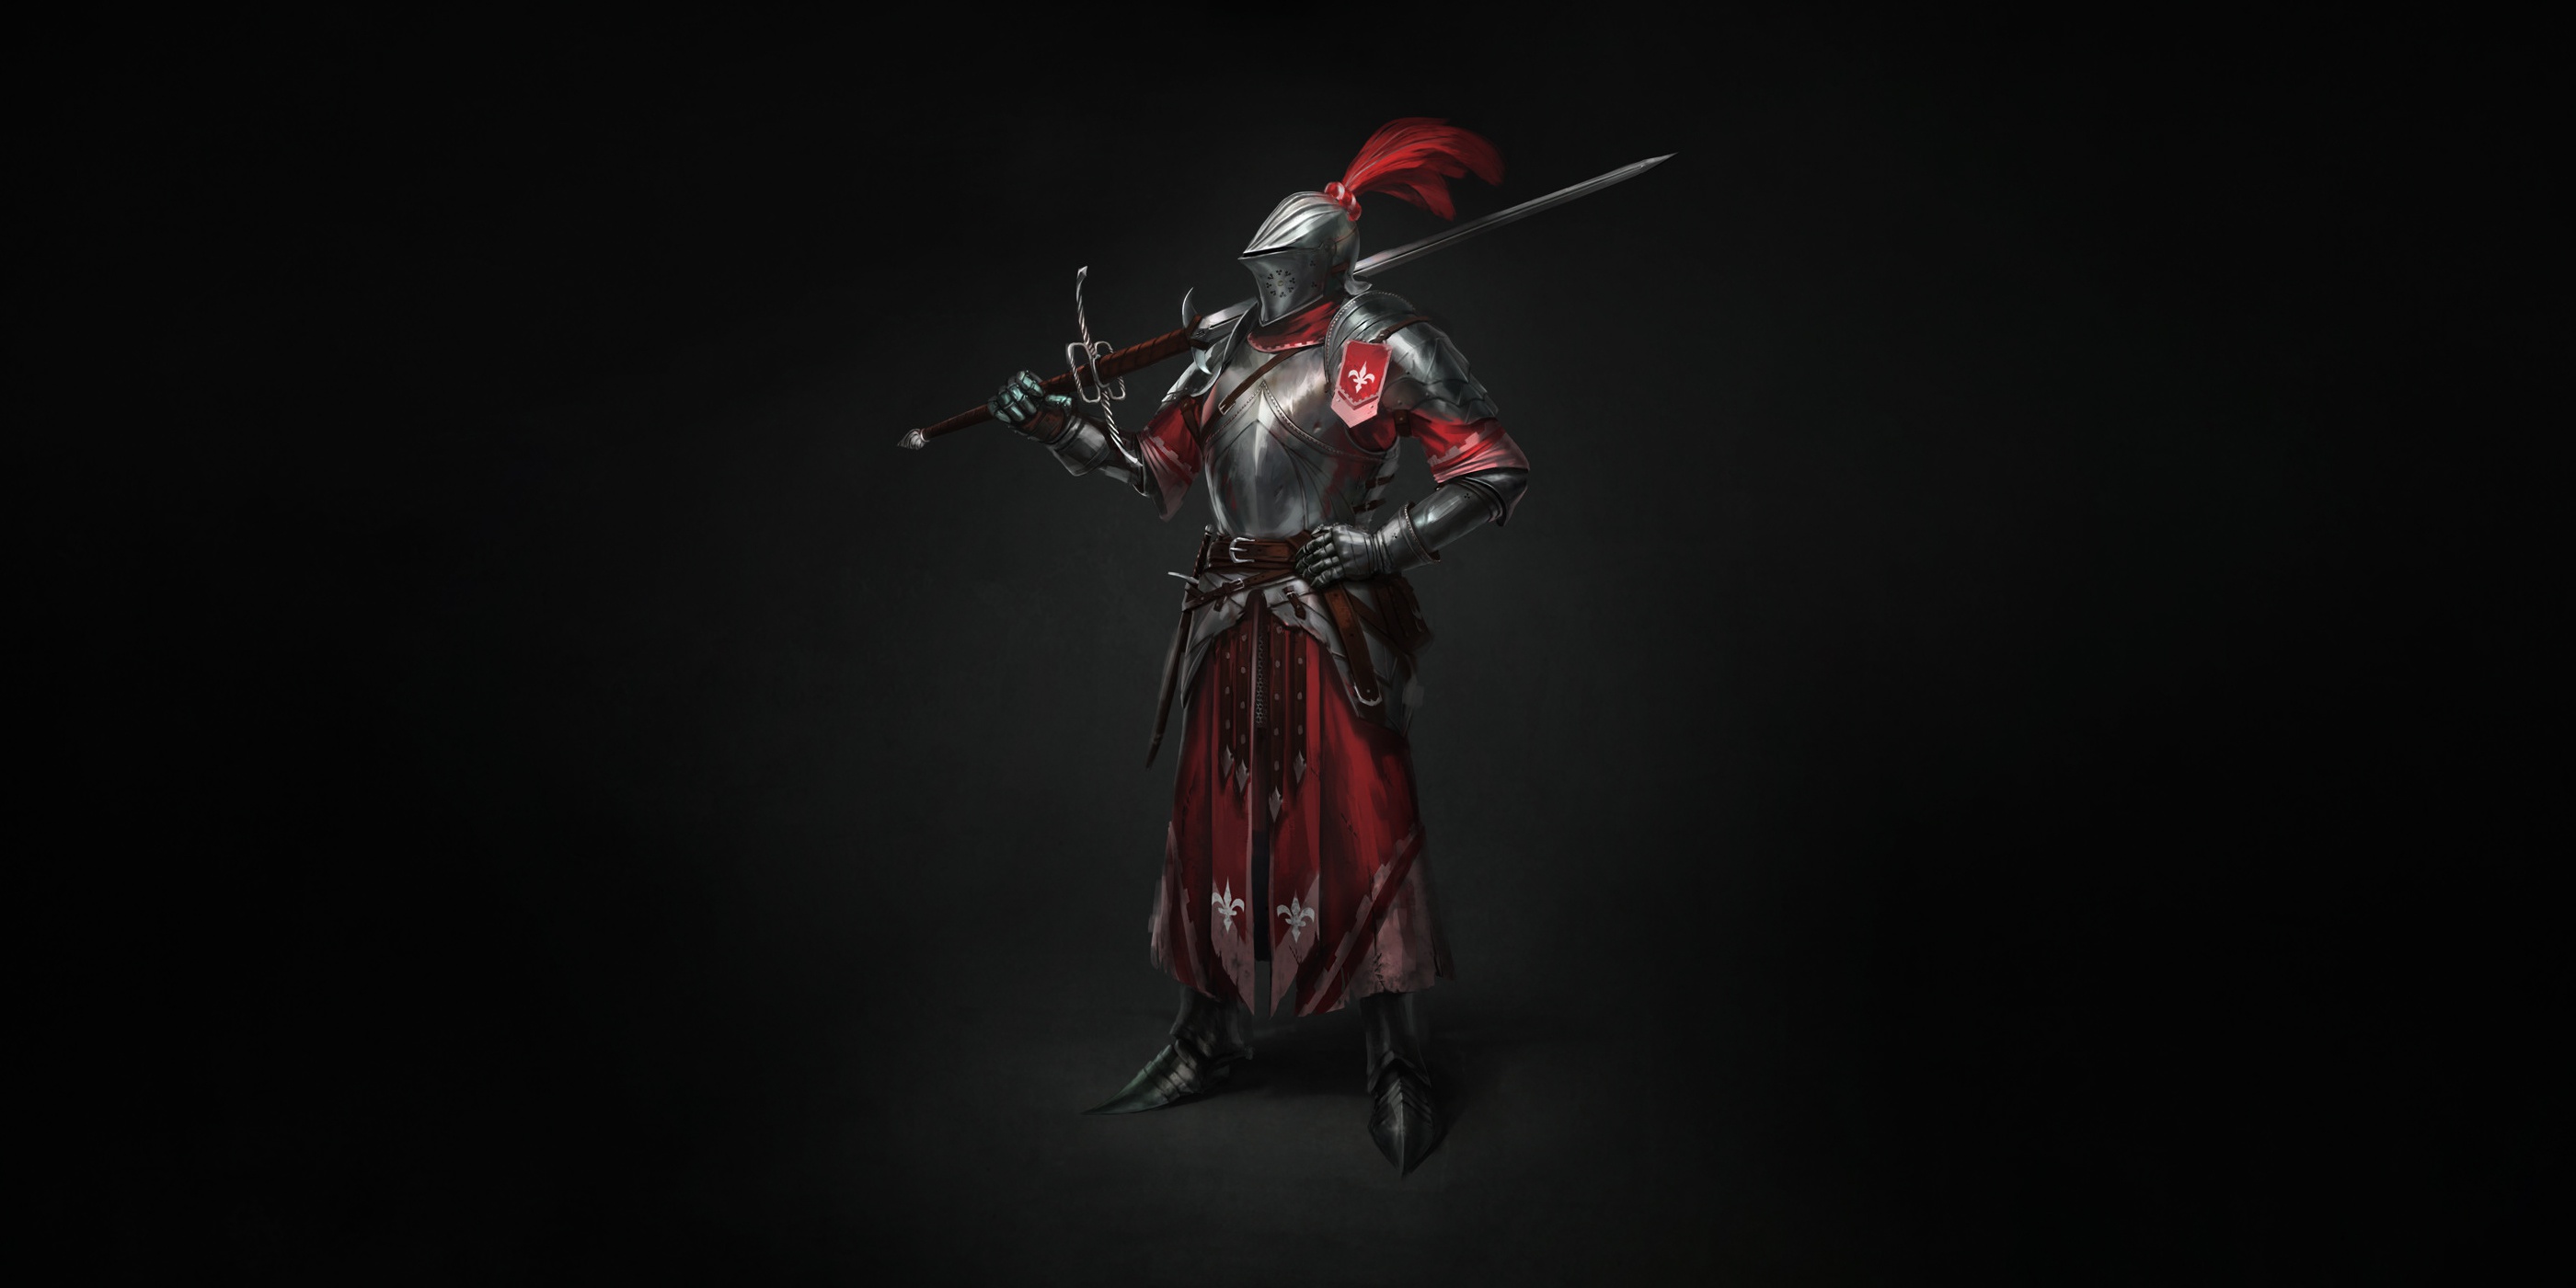 壁紙 ナイト By Max Yenin 1500 Medieval Knight Tournament Champion Zweihander Sword 鎧 剣 ファンタジー ダウンロード 写真